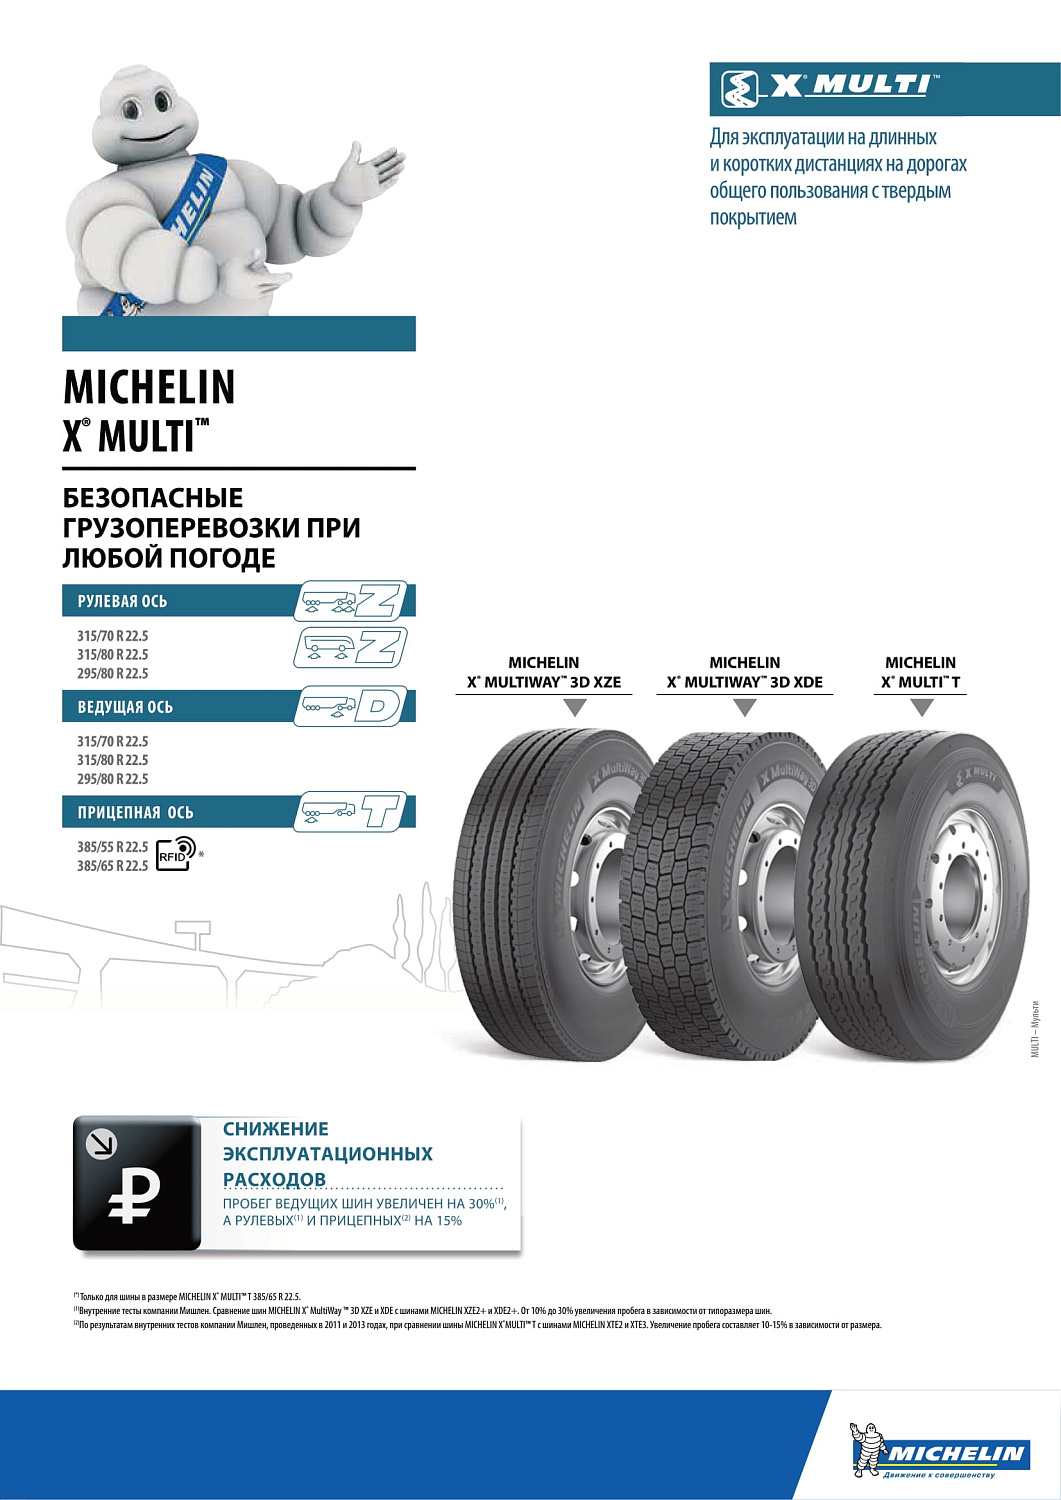 Michelin X Multiway 3D XZE 315/80 R22.5